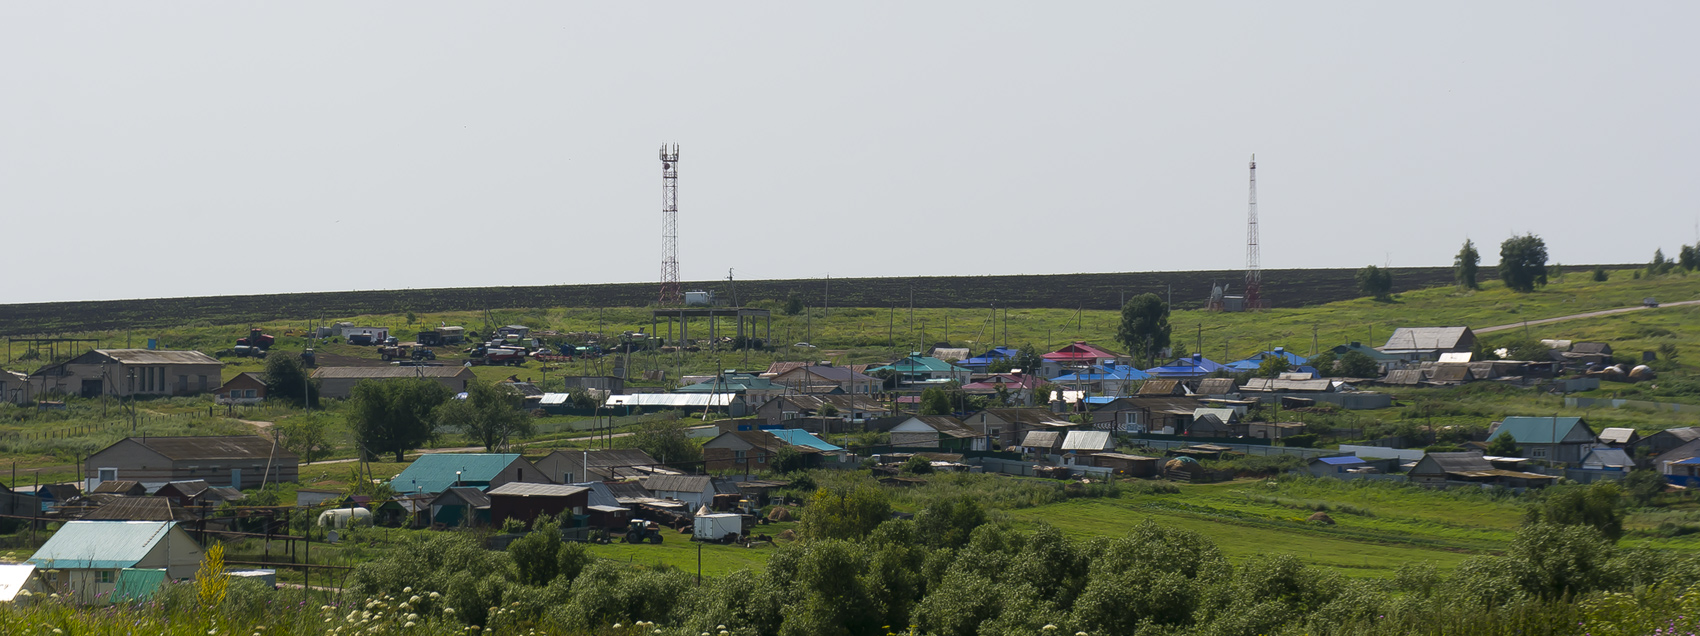 Сергиевский район, прочие н.п. — Панорамы